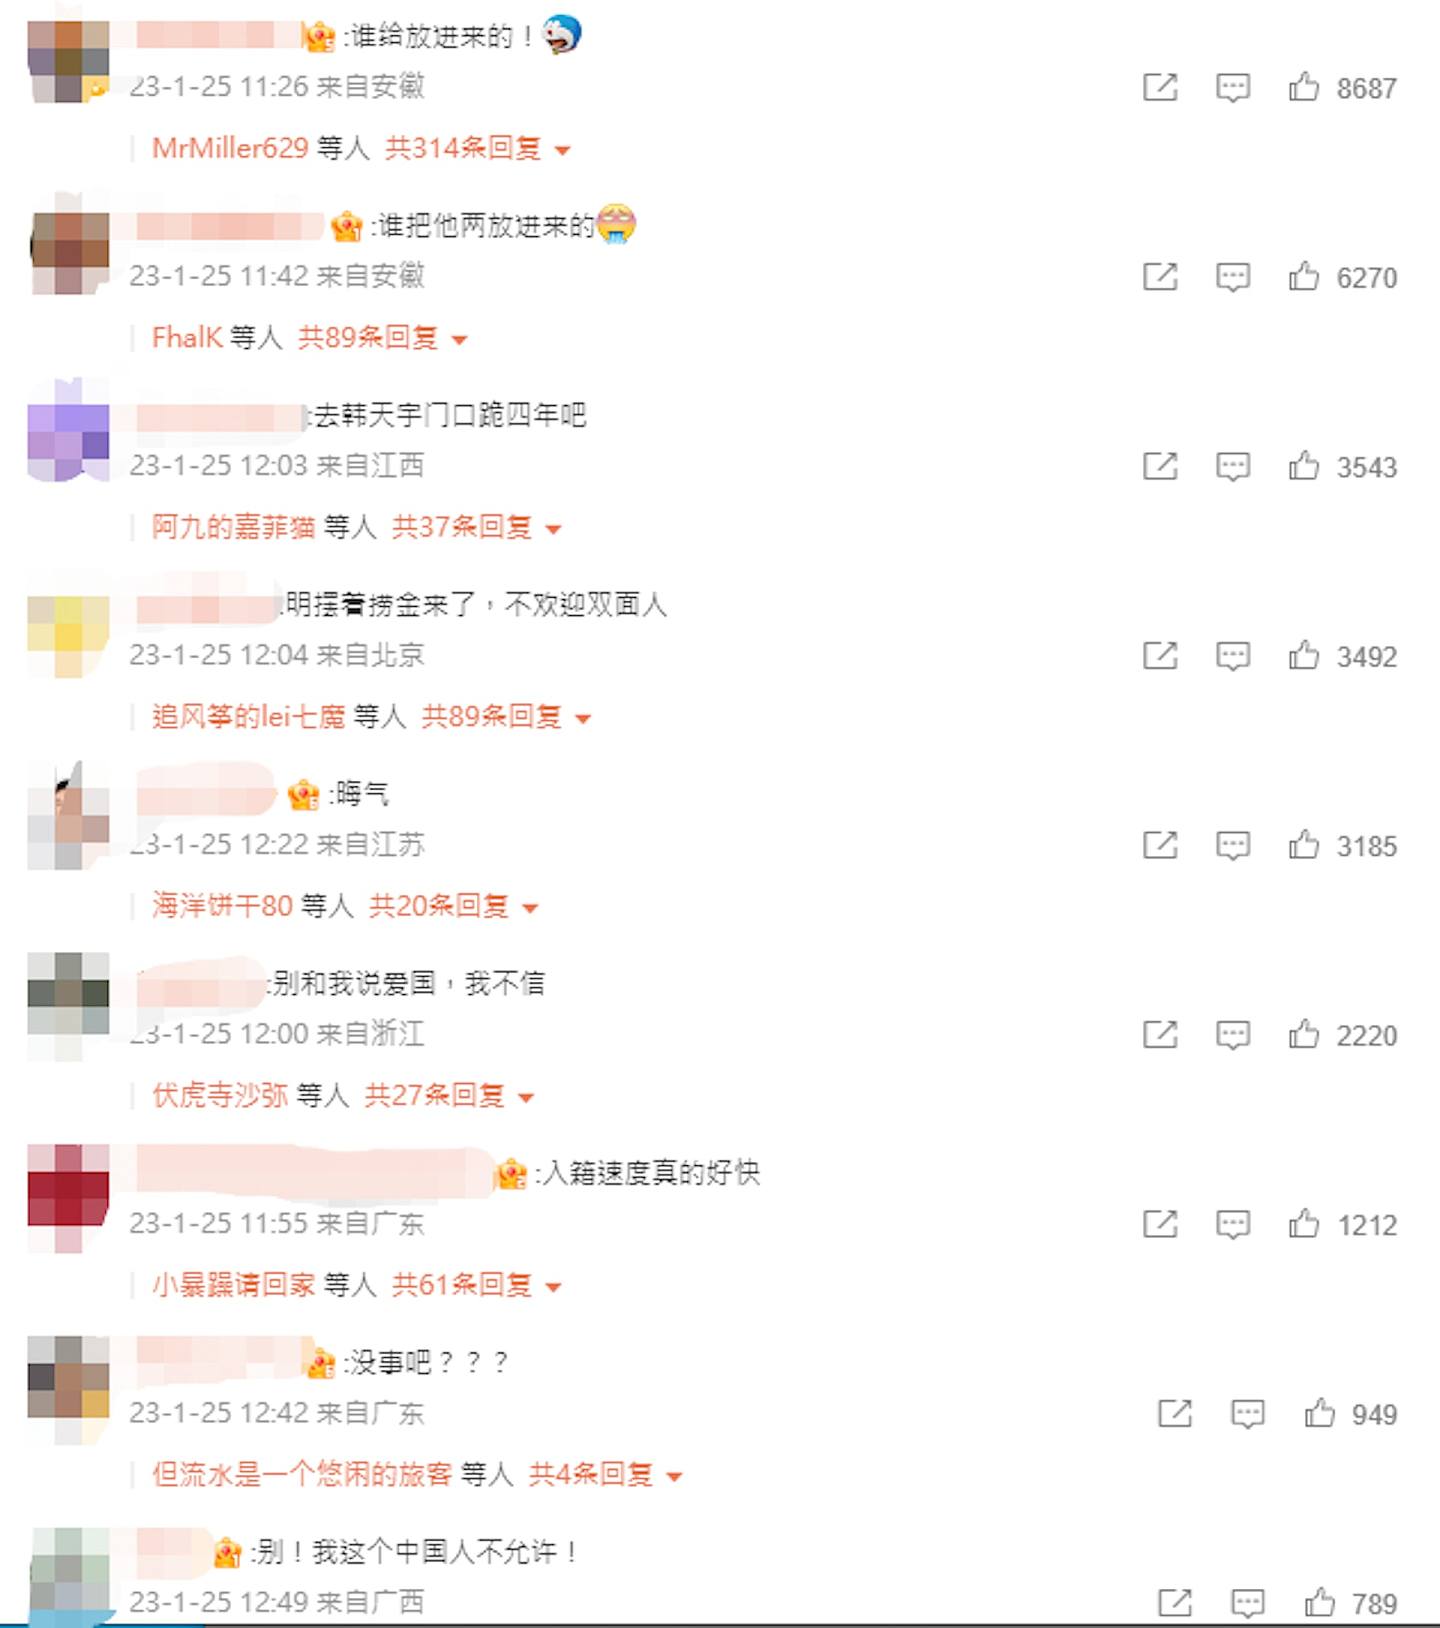 劉氏兄弟入籍中國的消息一出，遭到網民瘋狂抵制。（微博)